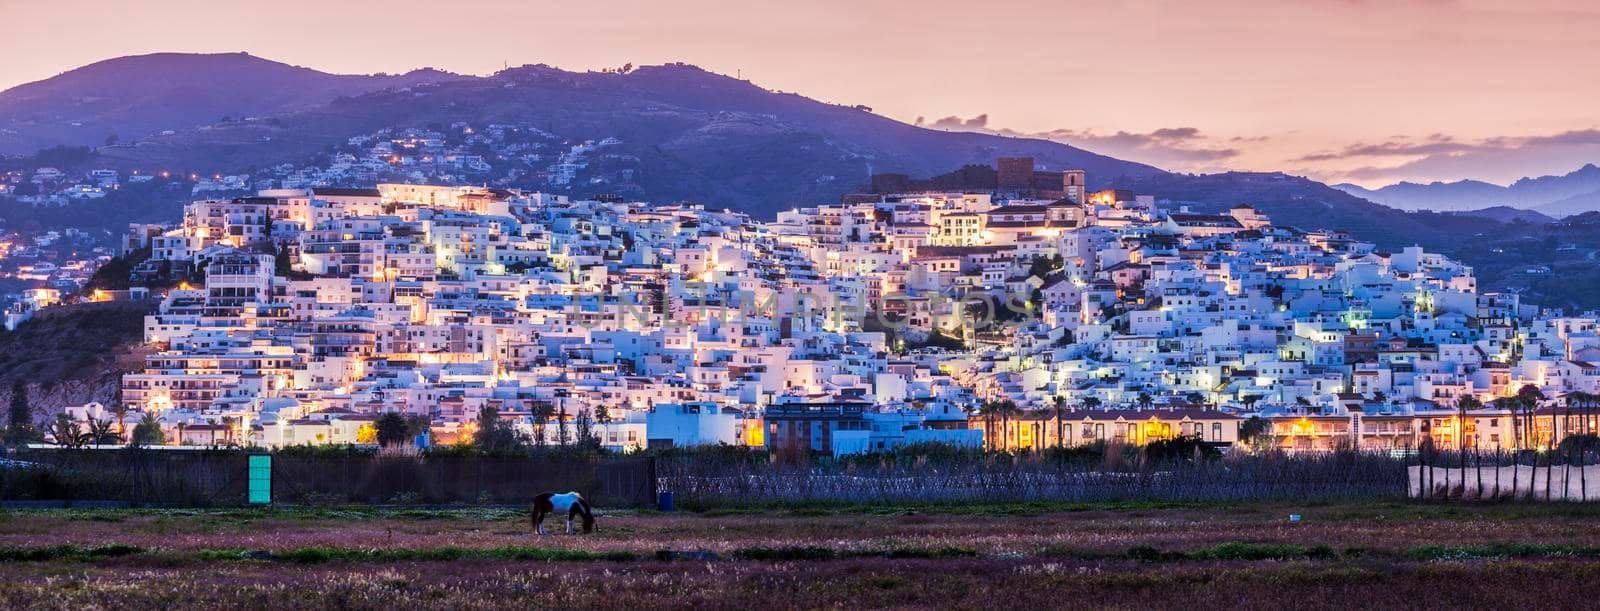 Panoramic view of Salobrena. Salobrena, Andalusia, Spain.